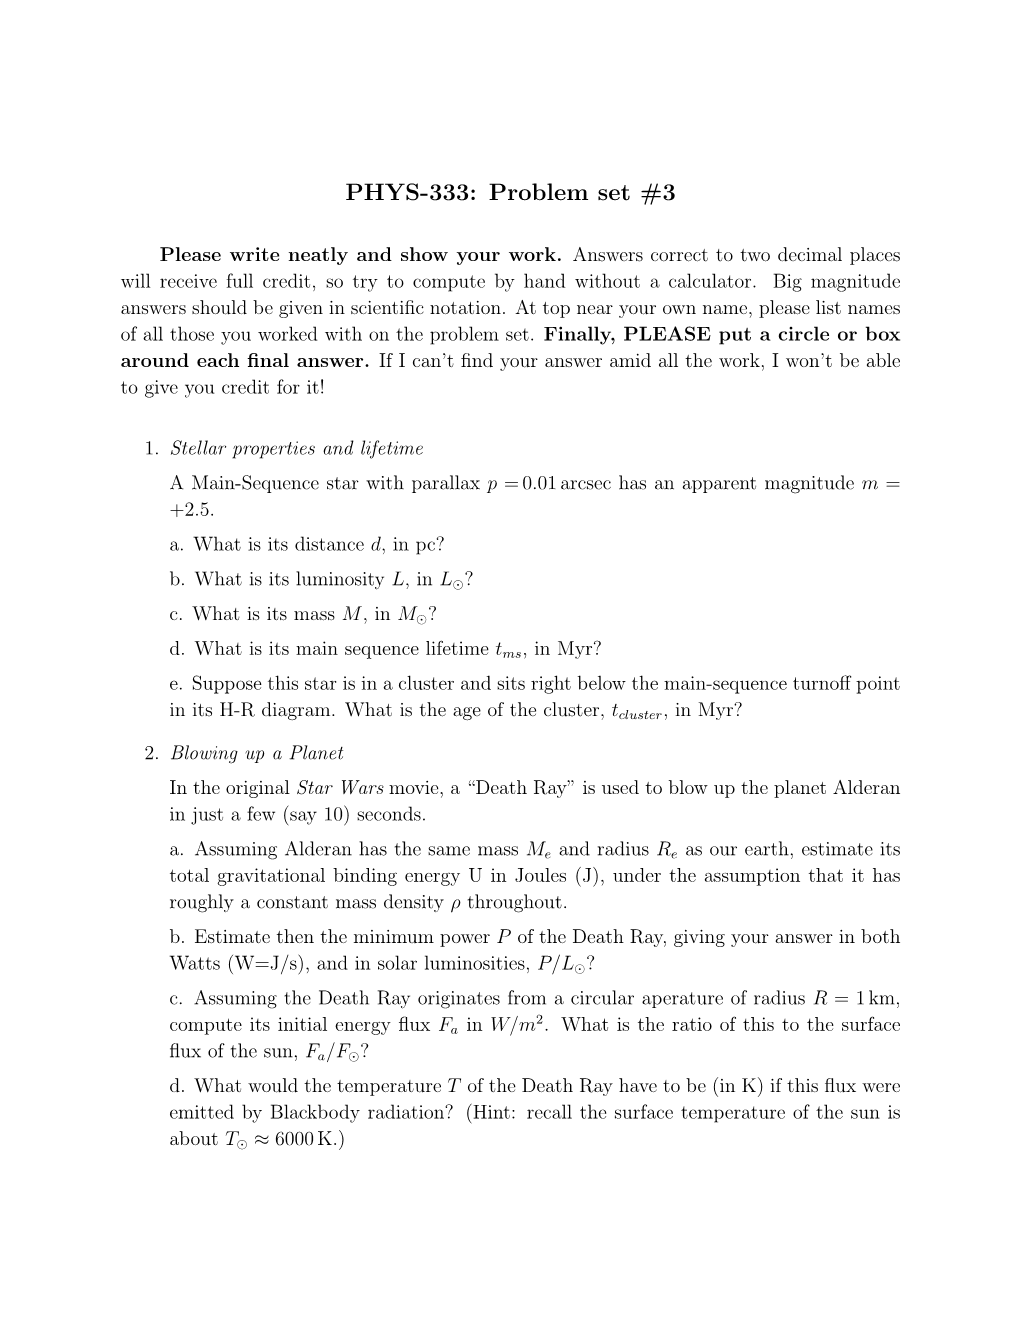 PHYS-333: Problem Set #3